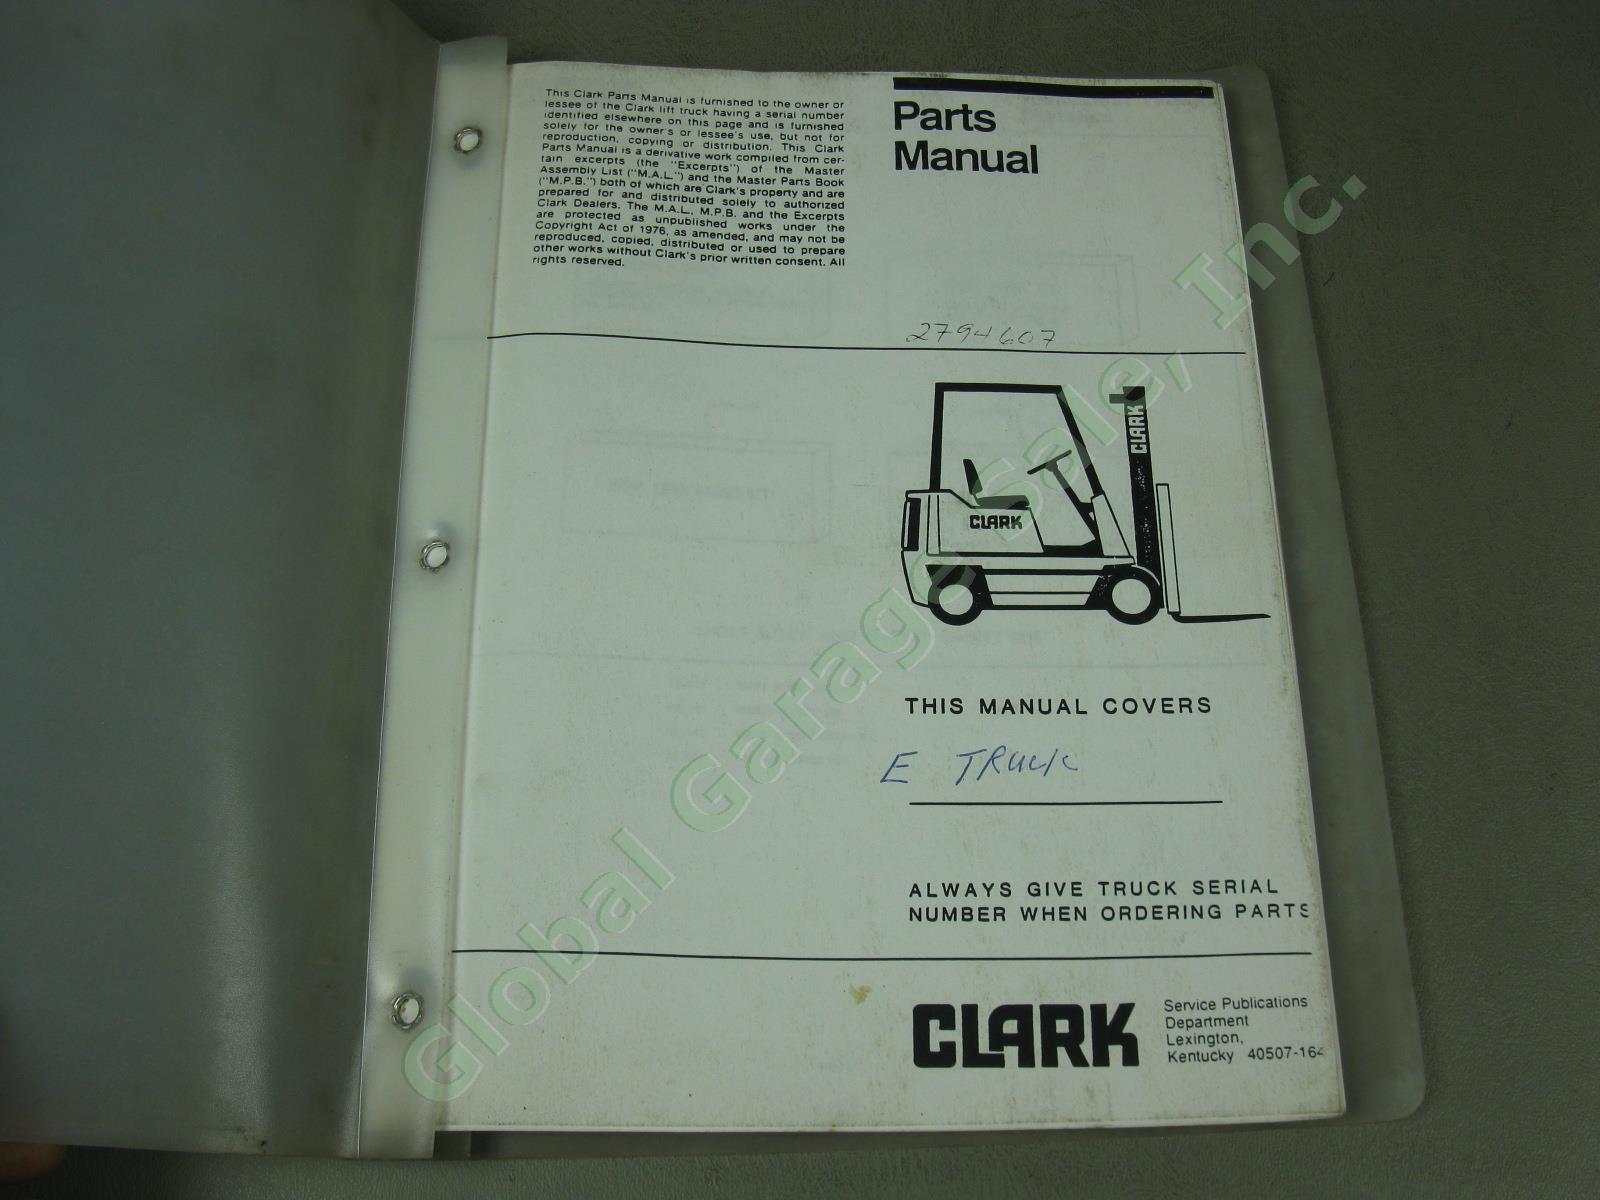 9 Vtg Clark Forklift Operators Parts Service Manual Lot C500 CF-20/25 1960s-90s 8